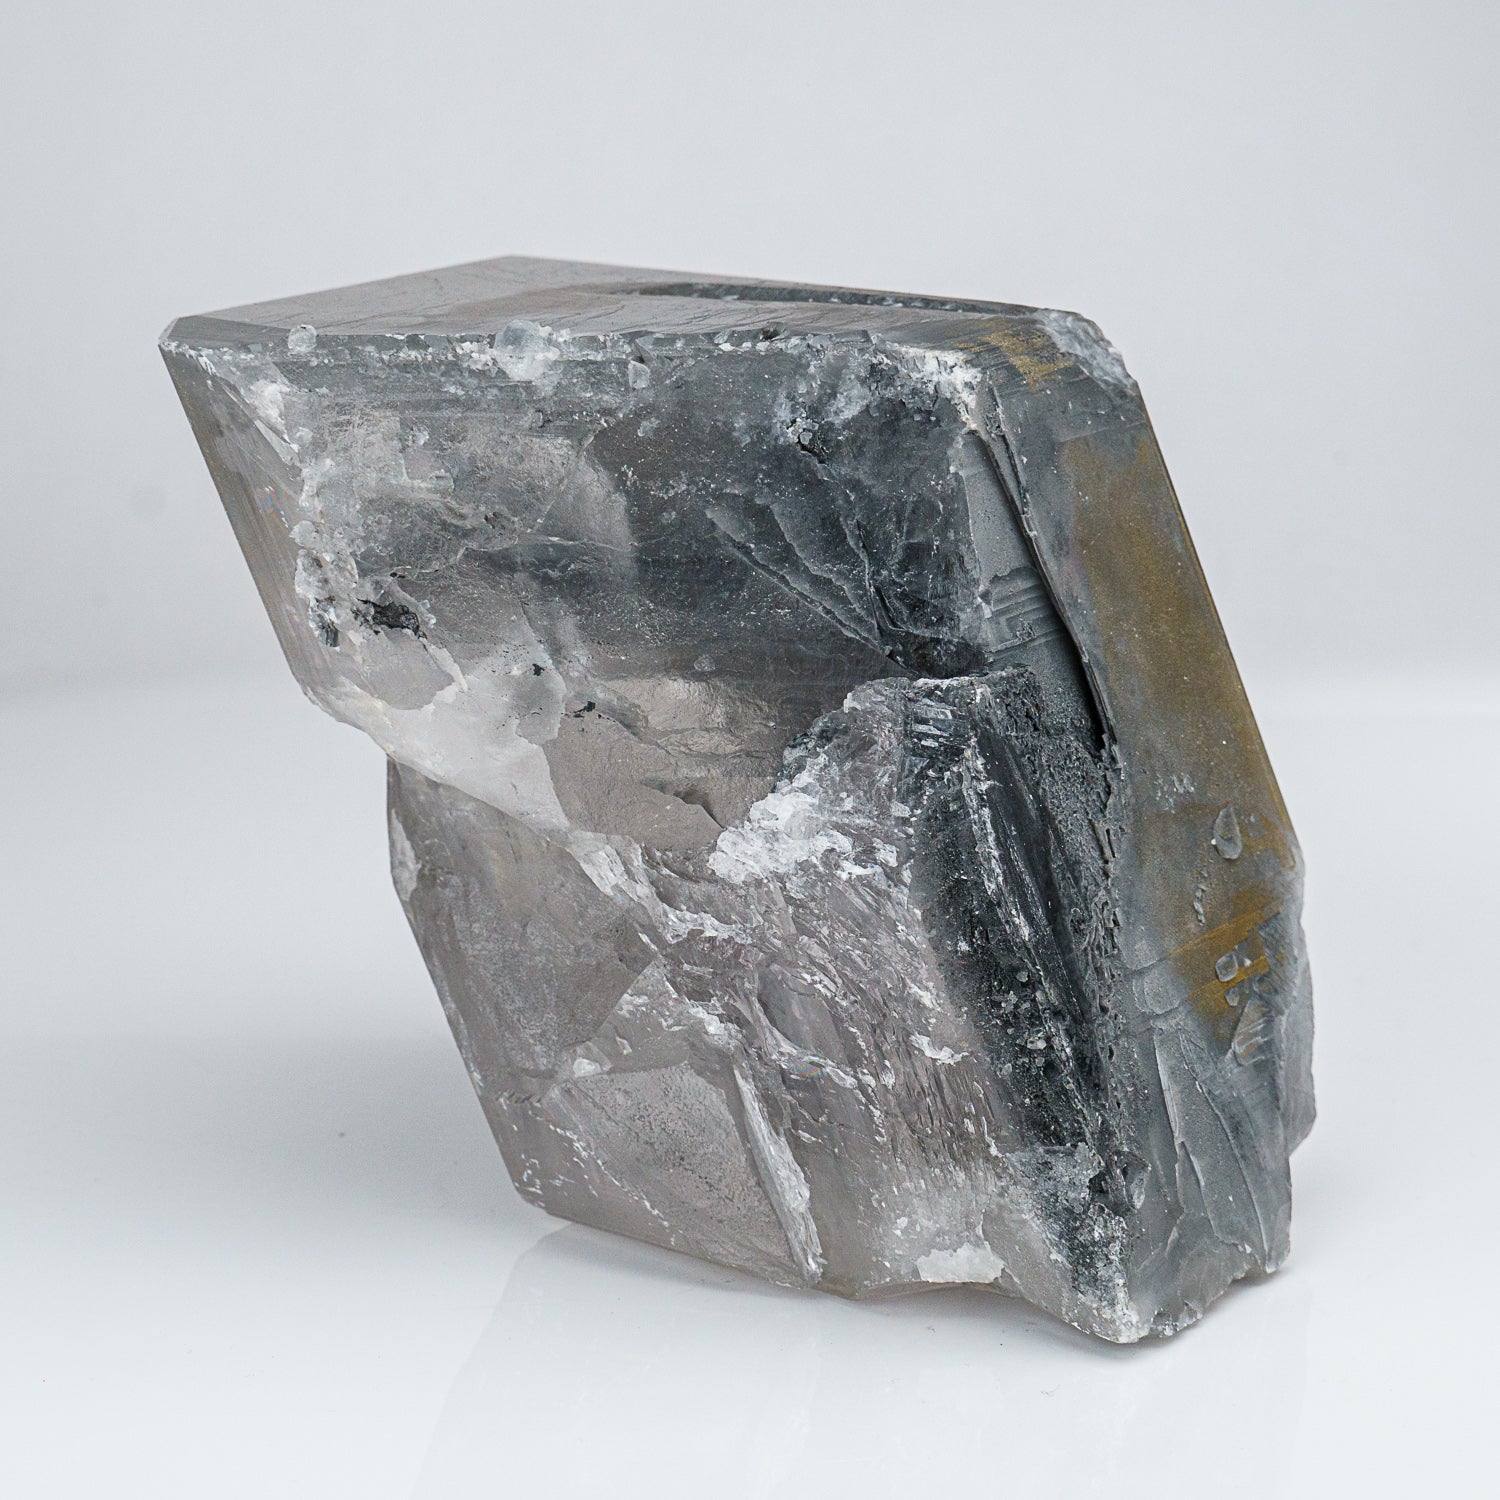 Calcite with Pyrite From Dachang Sn-polymetallic ore field, Nandan Co., Hechi Prefecture, Guangxi Zhuang Autonomous Region, China